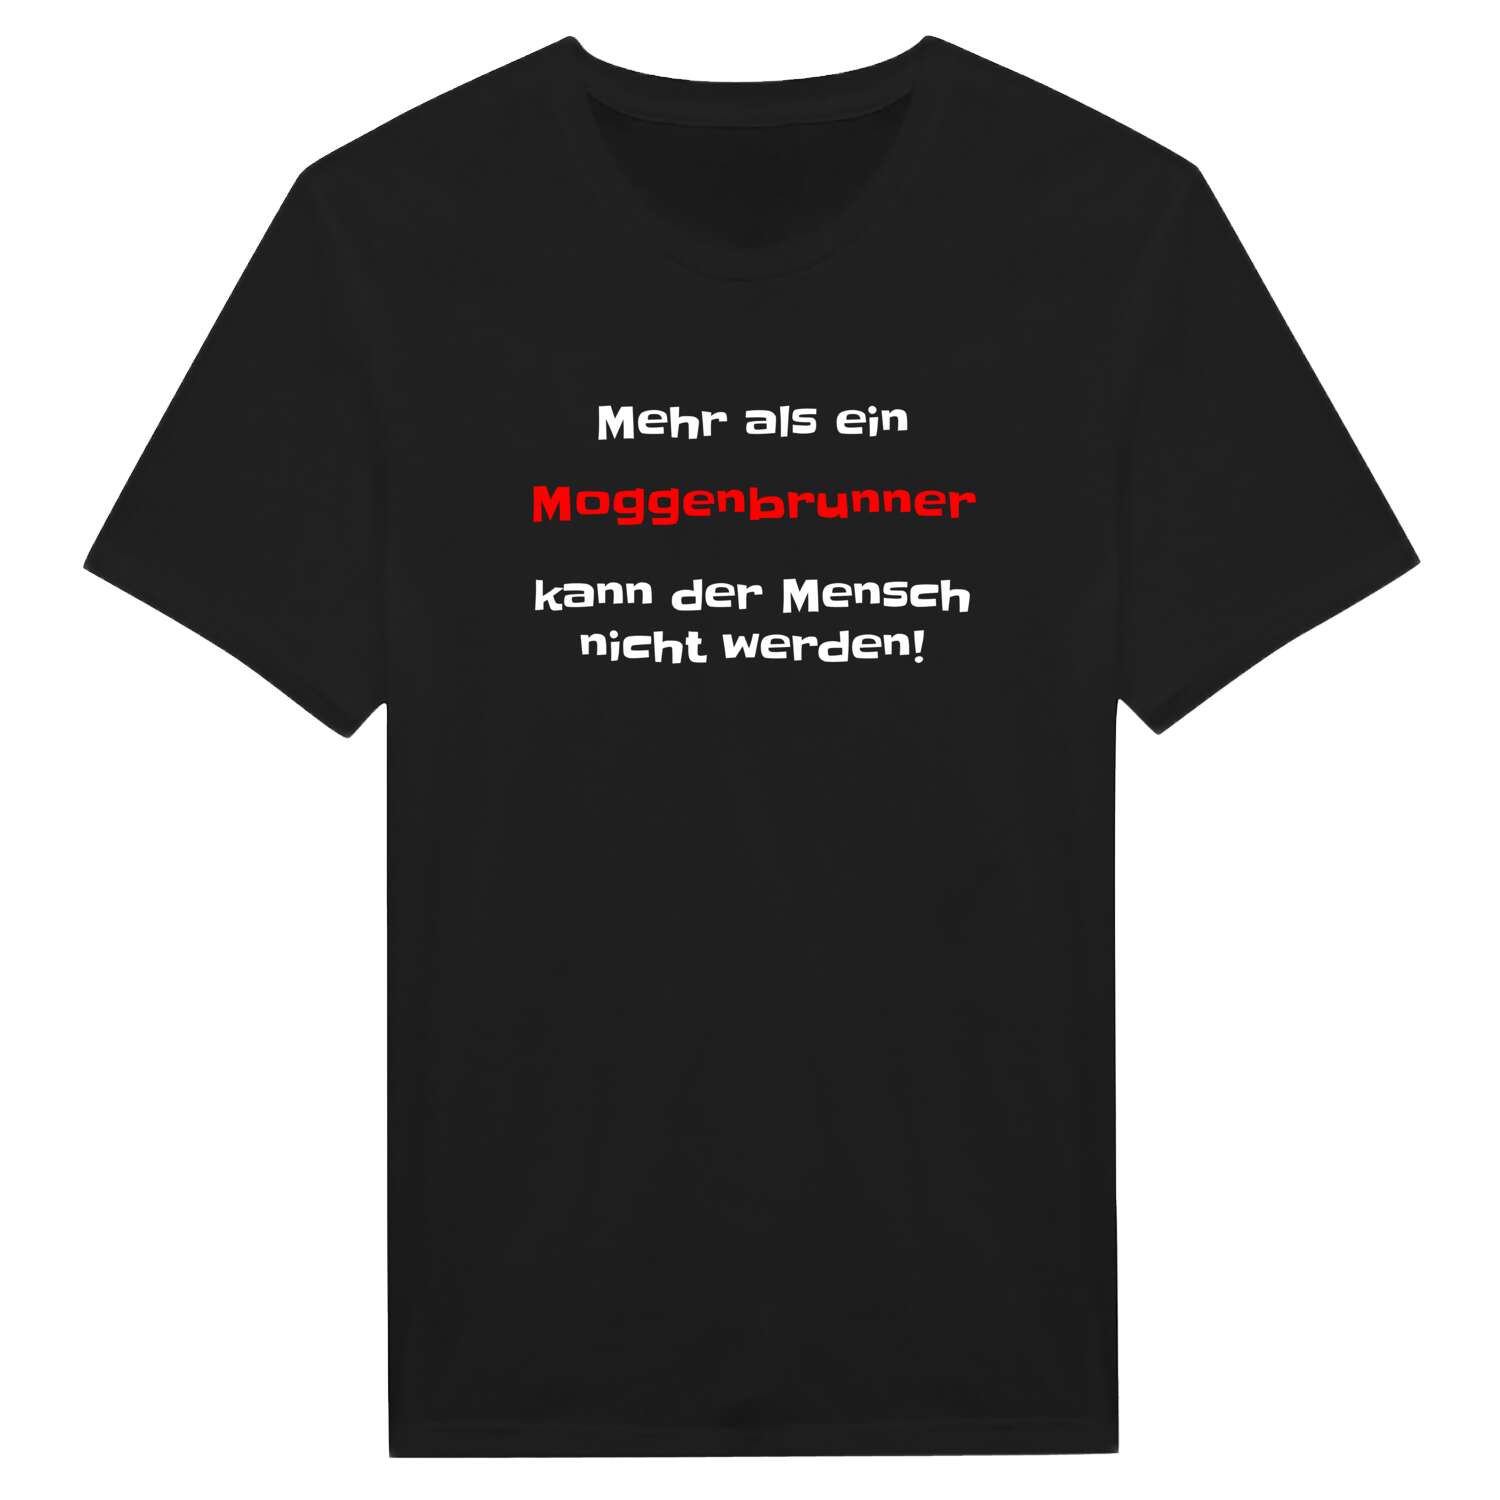 Moggenbrunn T-Shirt »Mehr als ein«